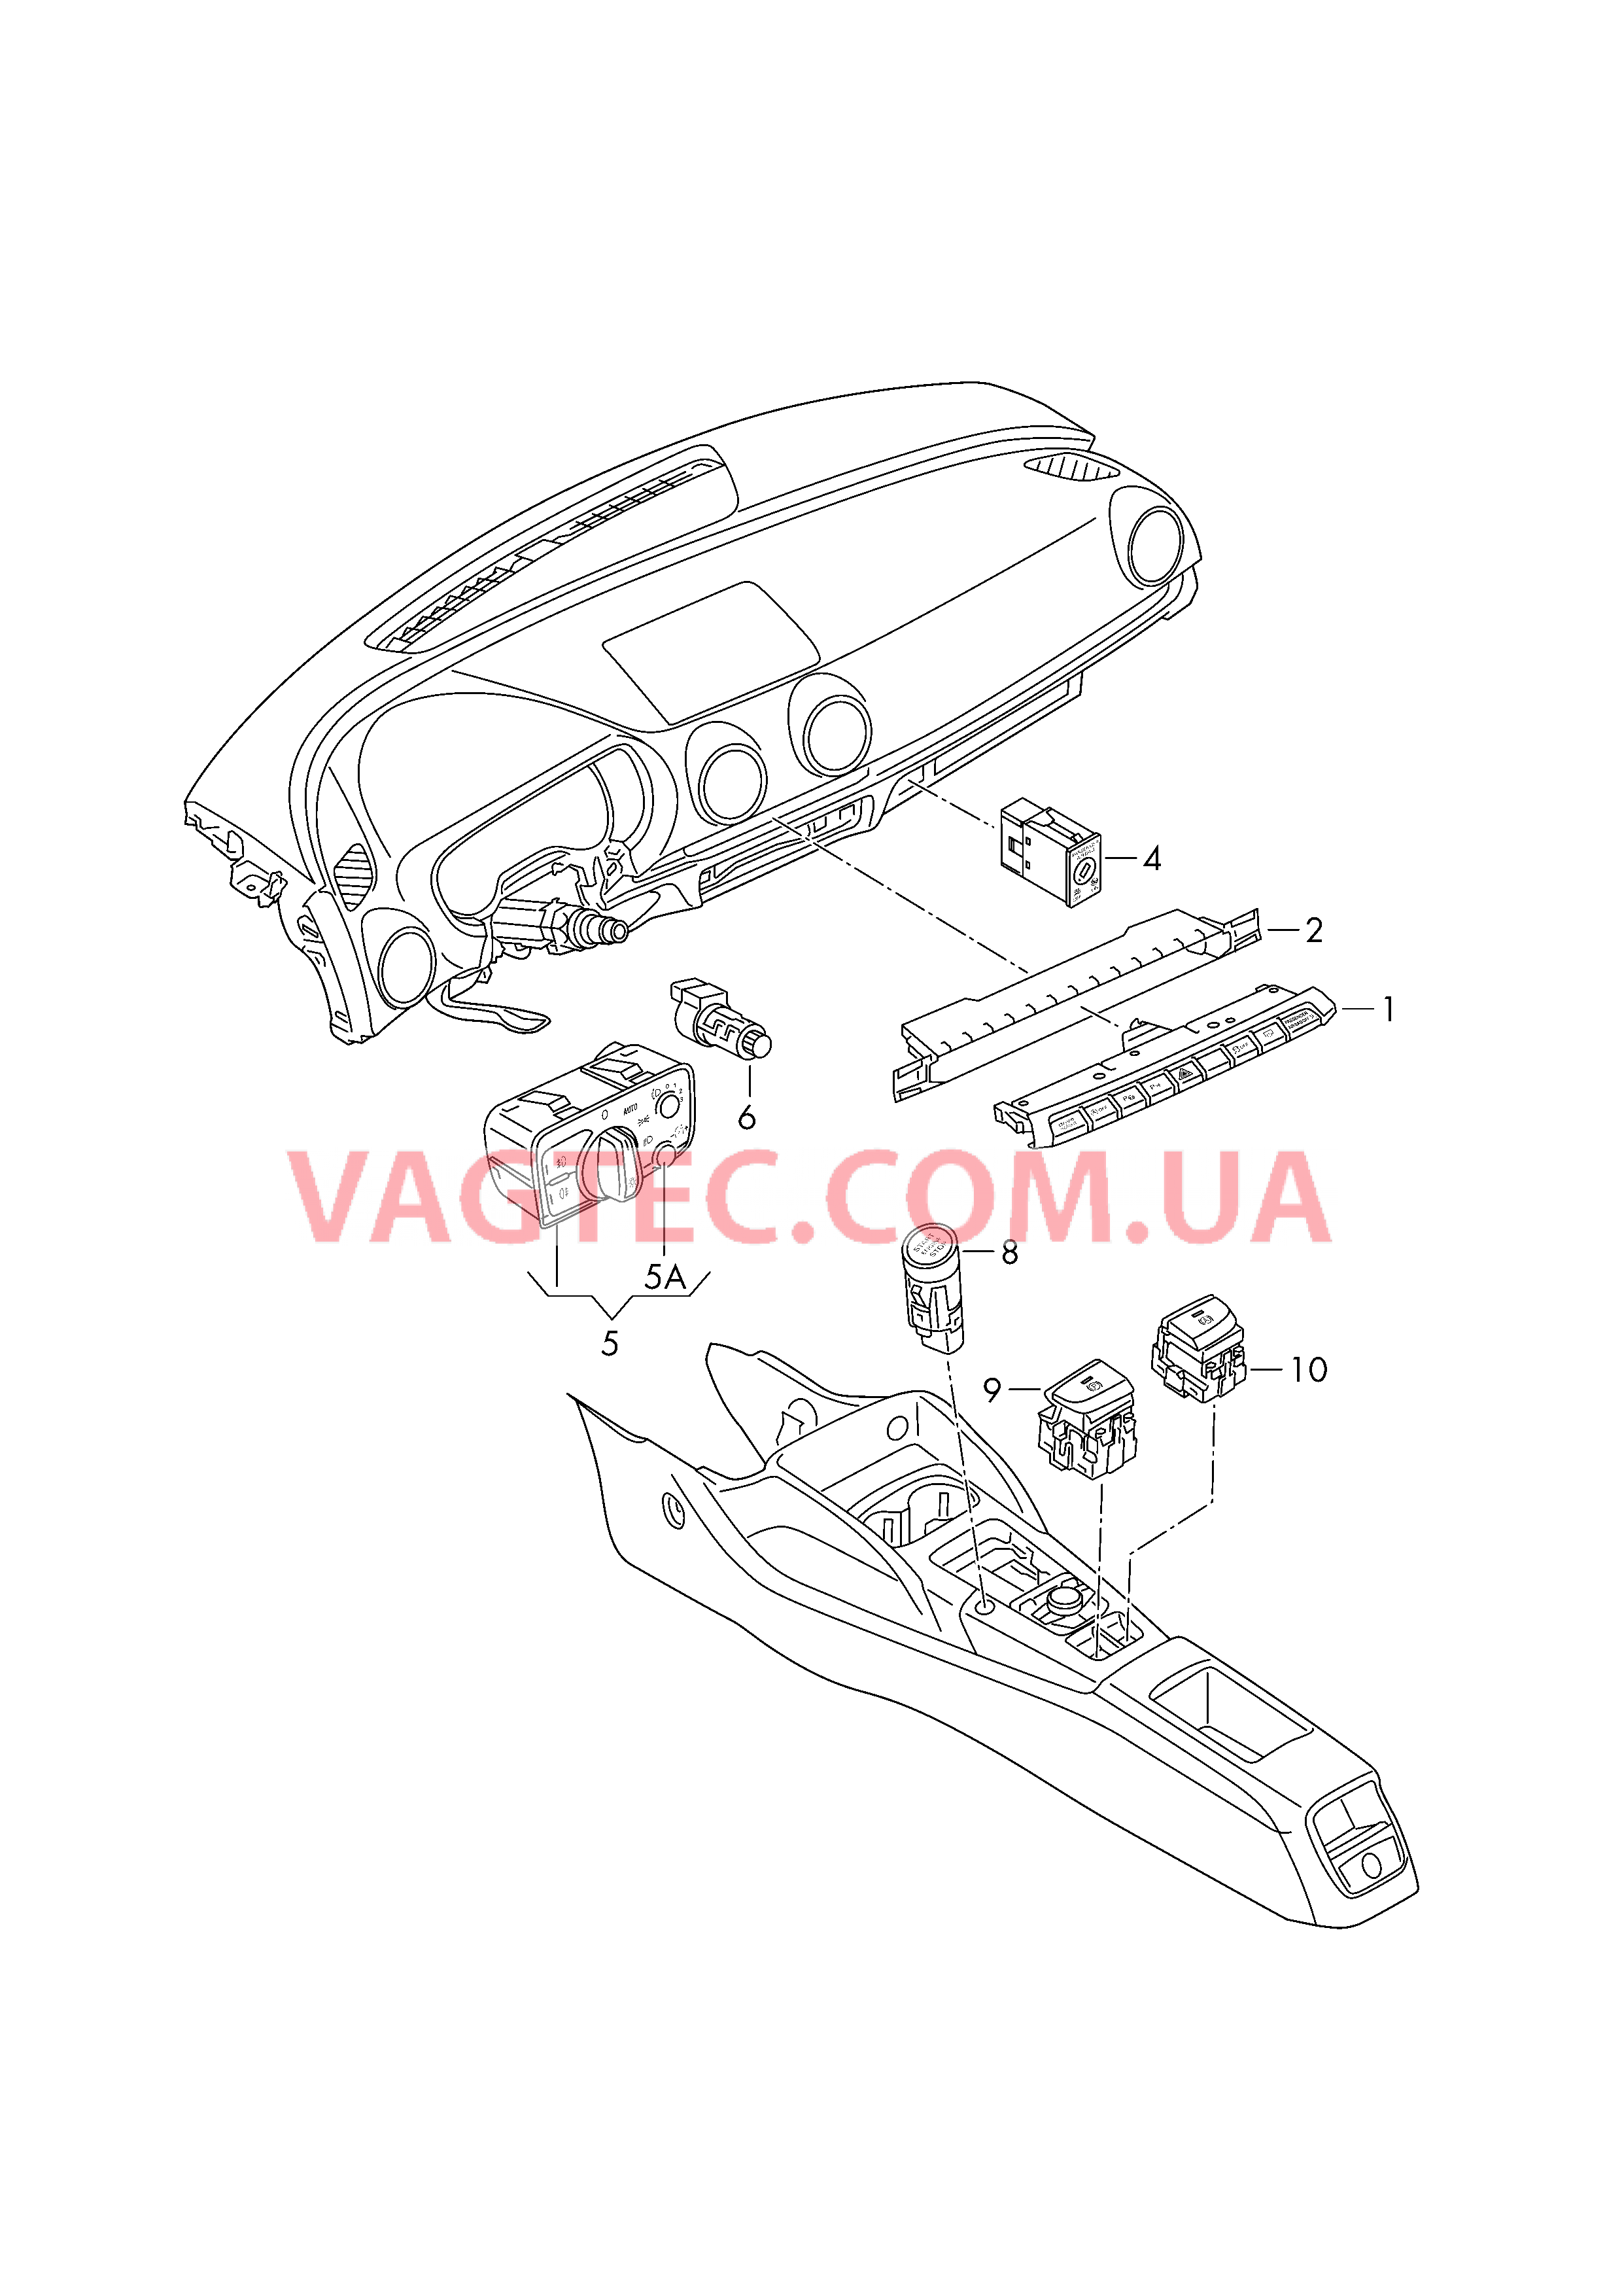 Выключатель в панели приборов Выключатель фар Выключатель в централ. консоли  для AUDI A3 2017